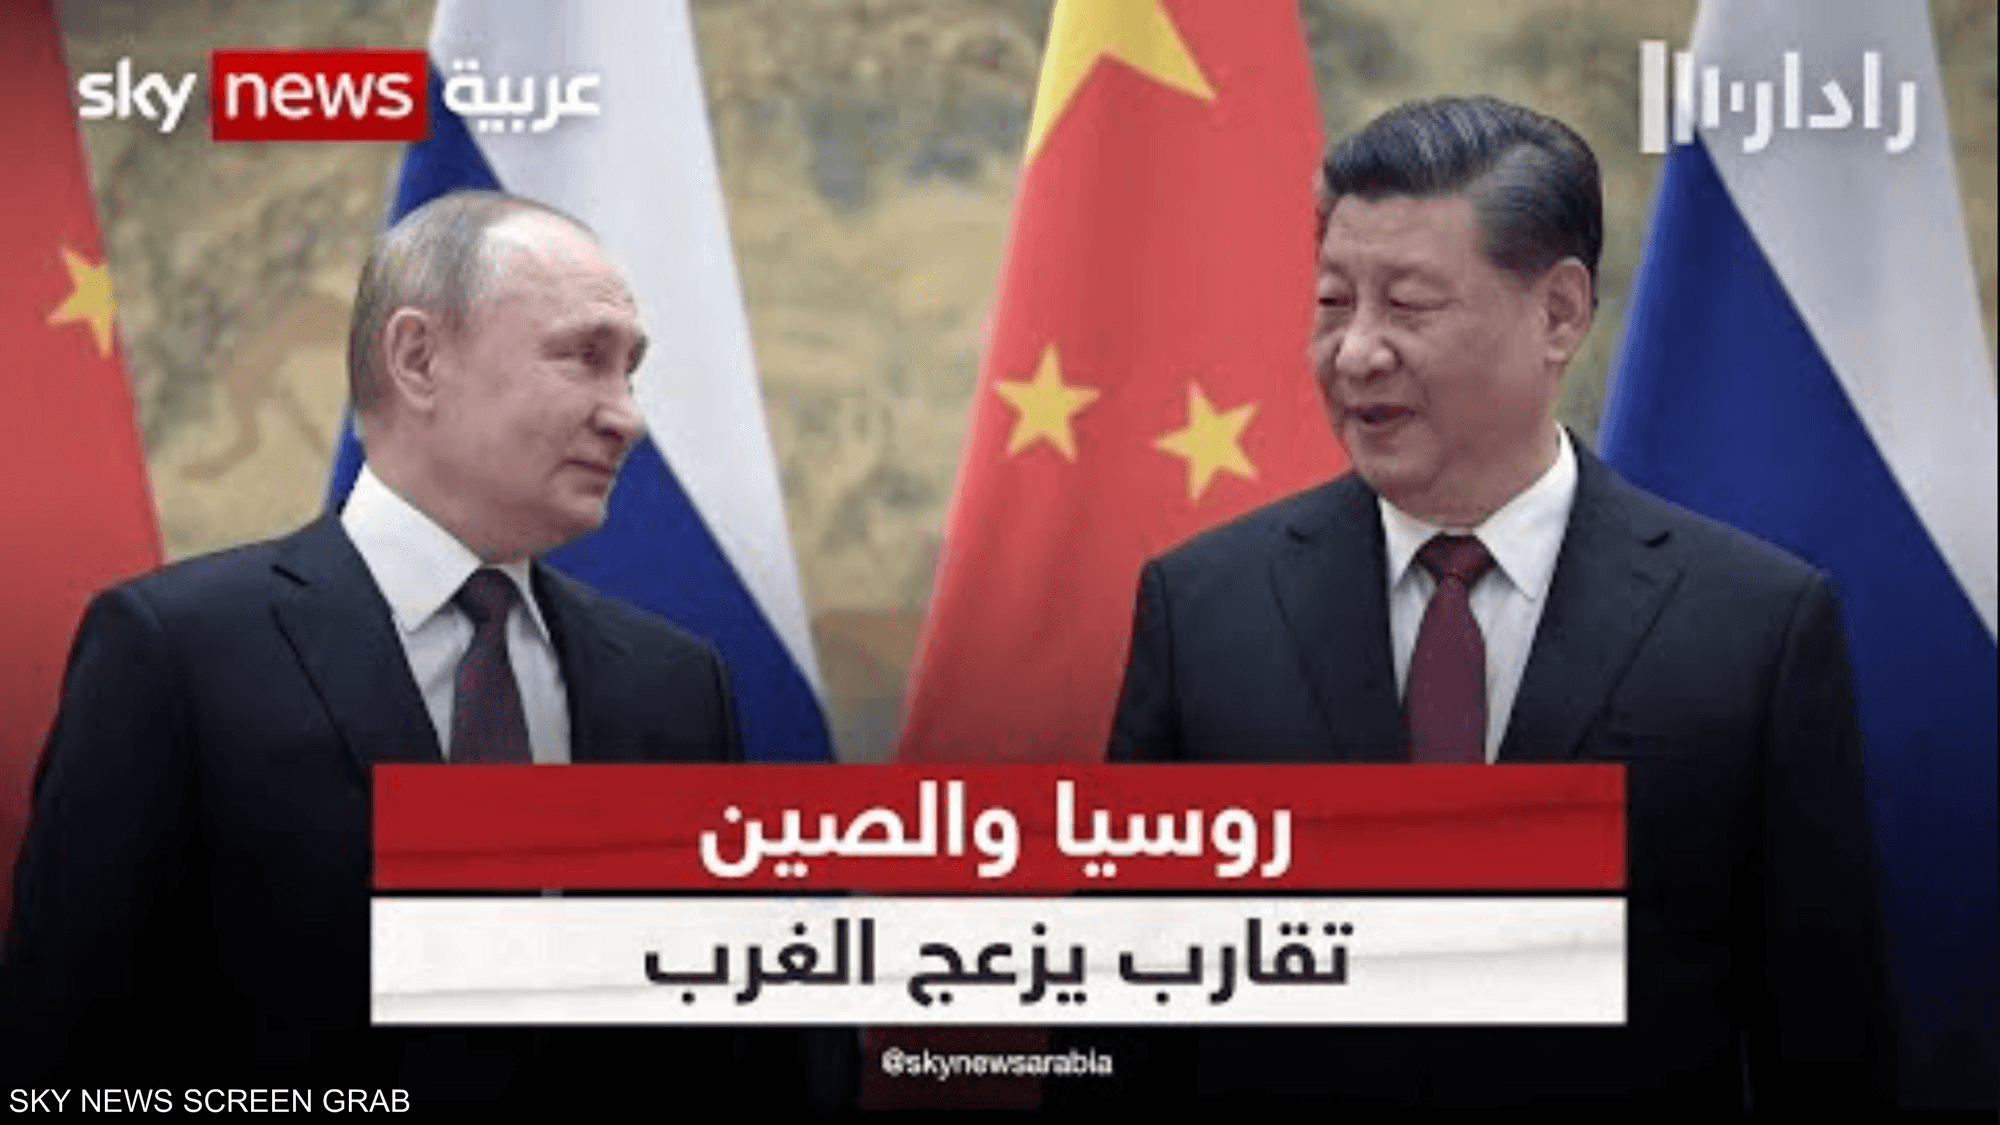 الصين تعلن استعدادها العمل مع روسيا لتنفيذ شراكة استراتيجية